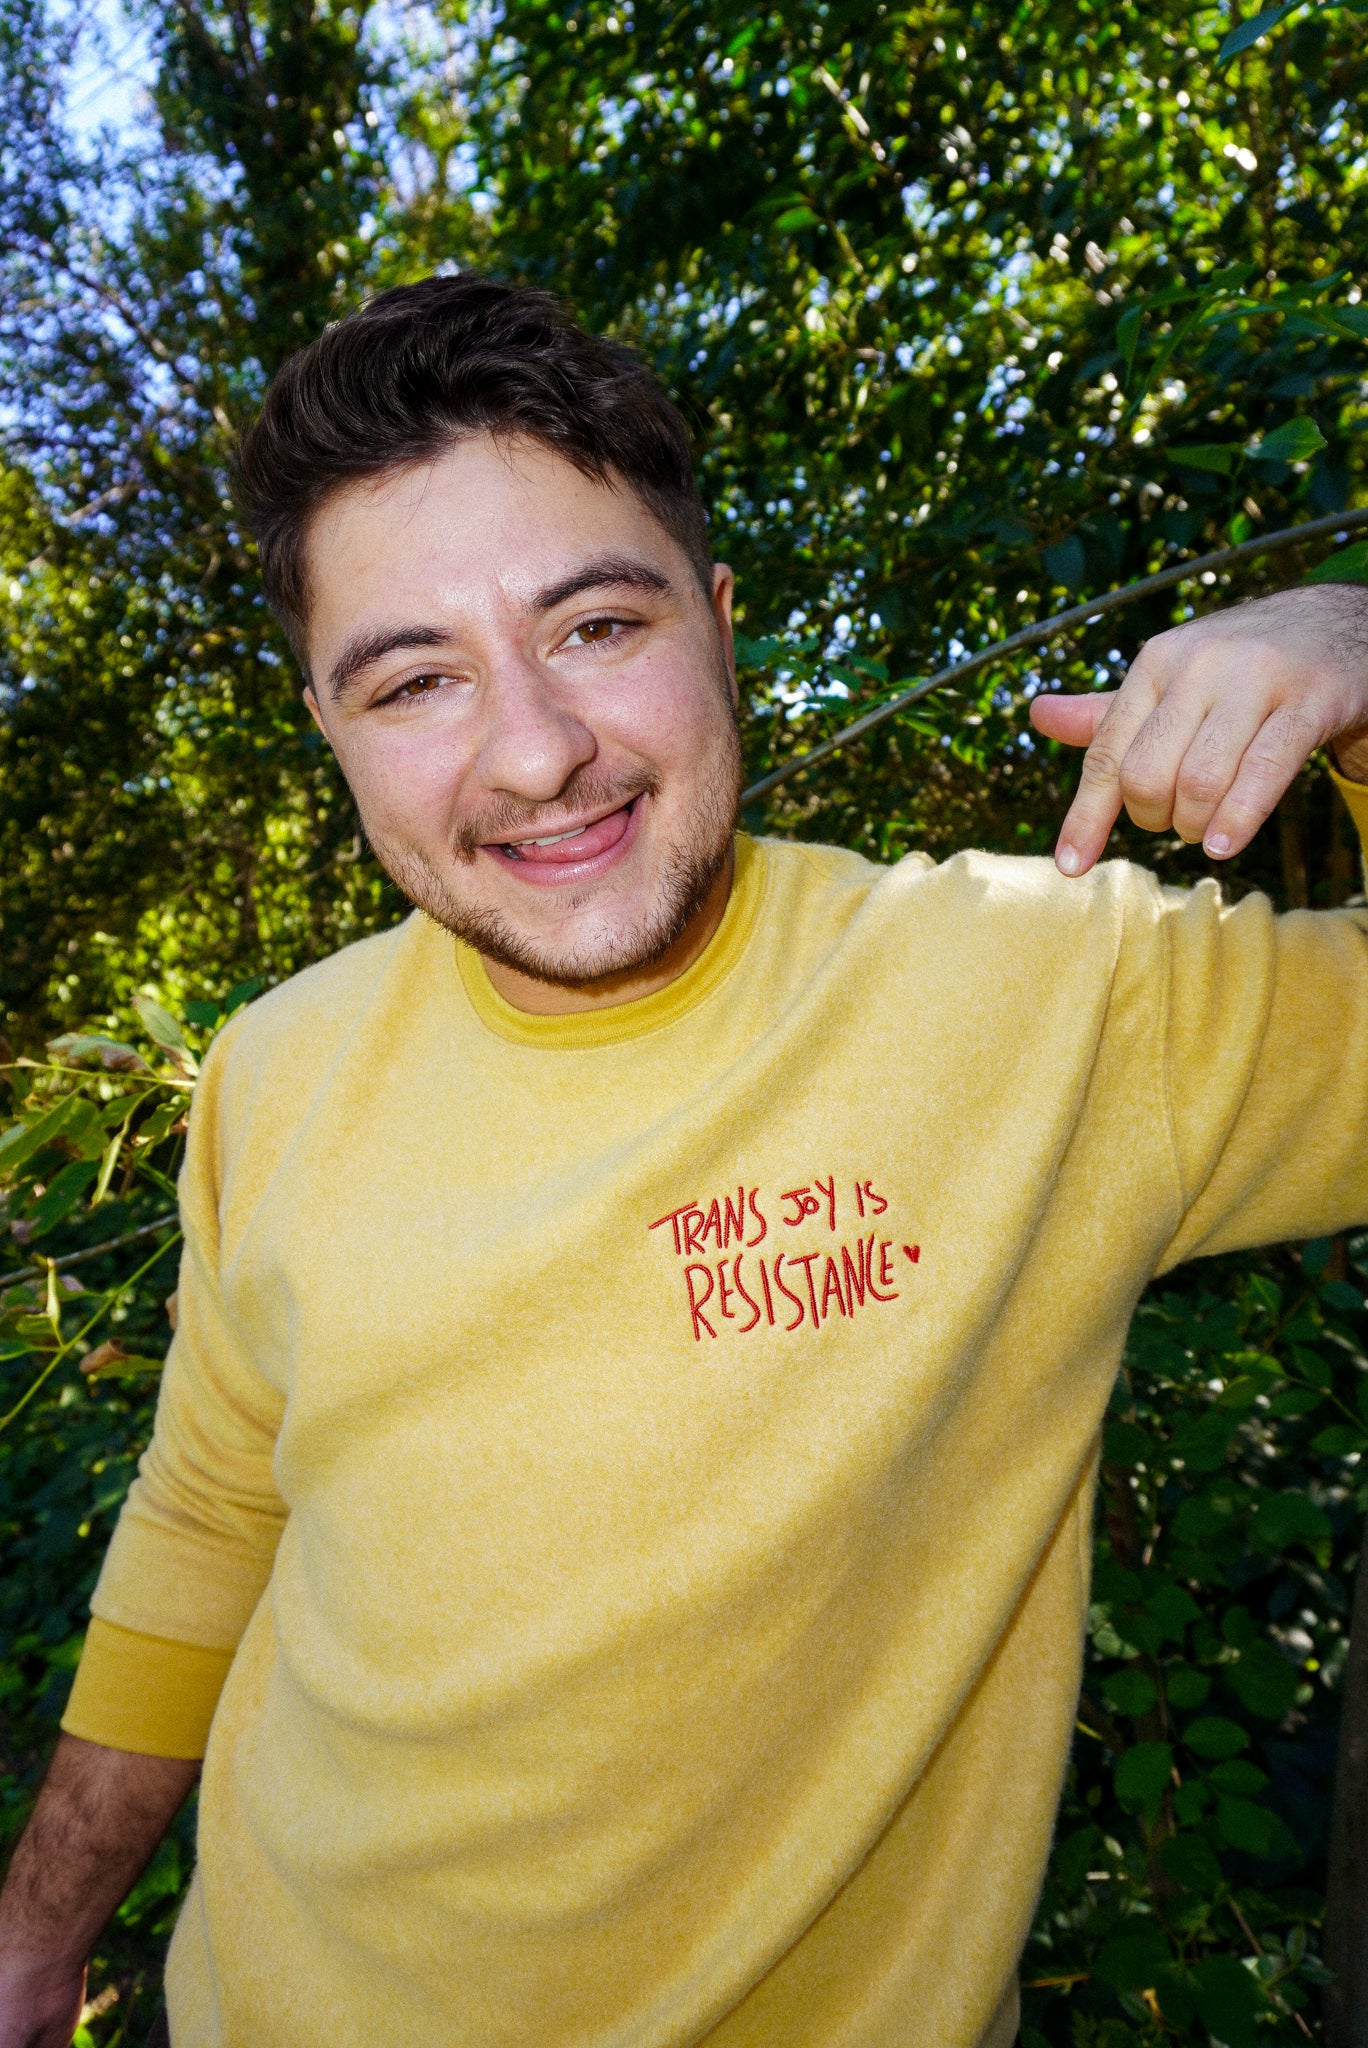 Trans Joy Is Resistance - Mustard Sweater